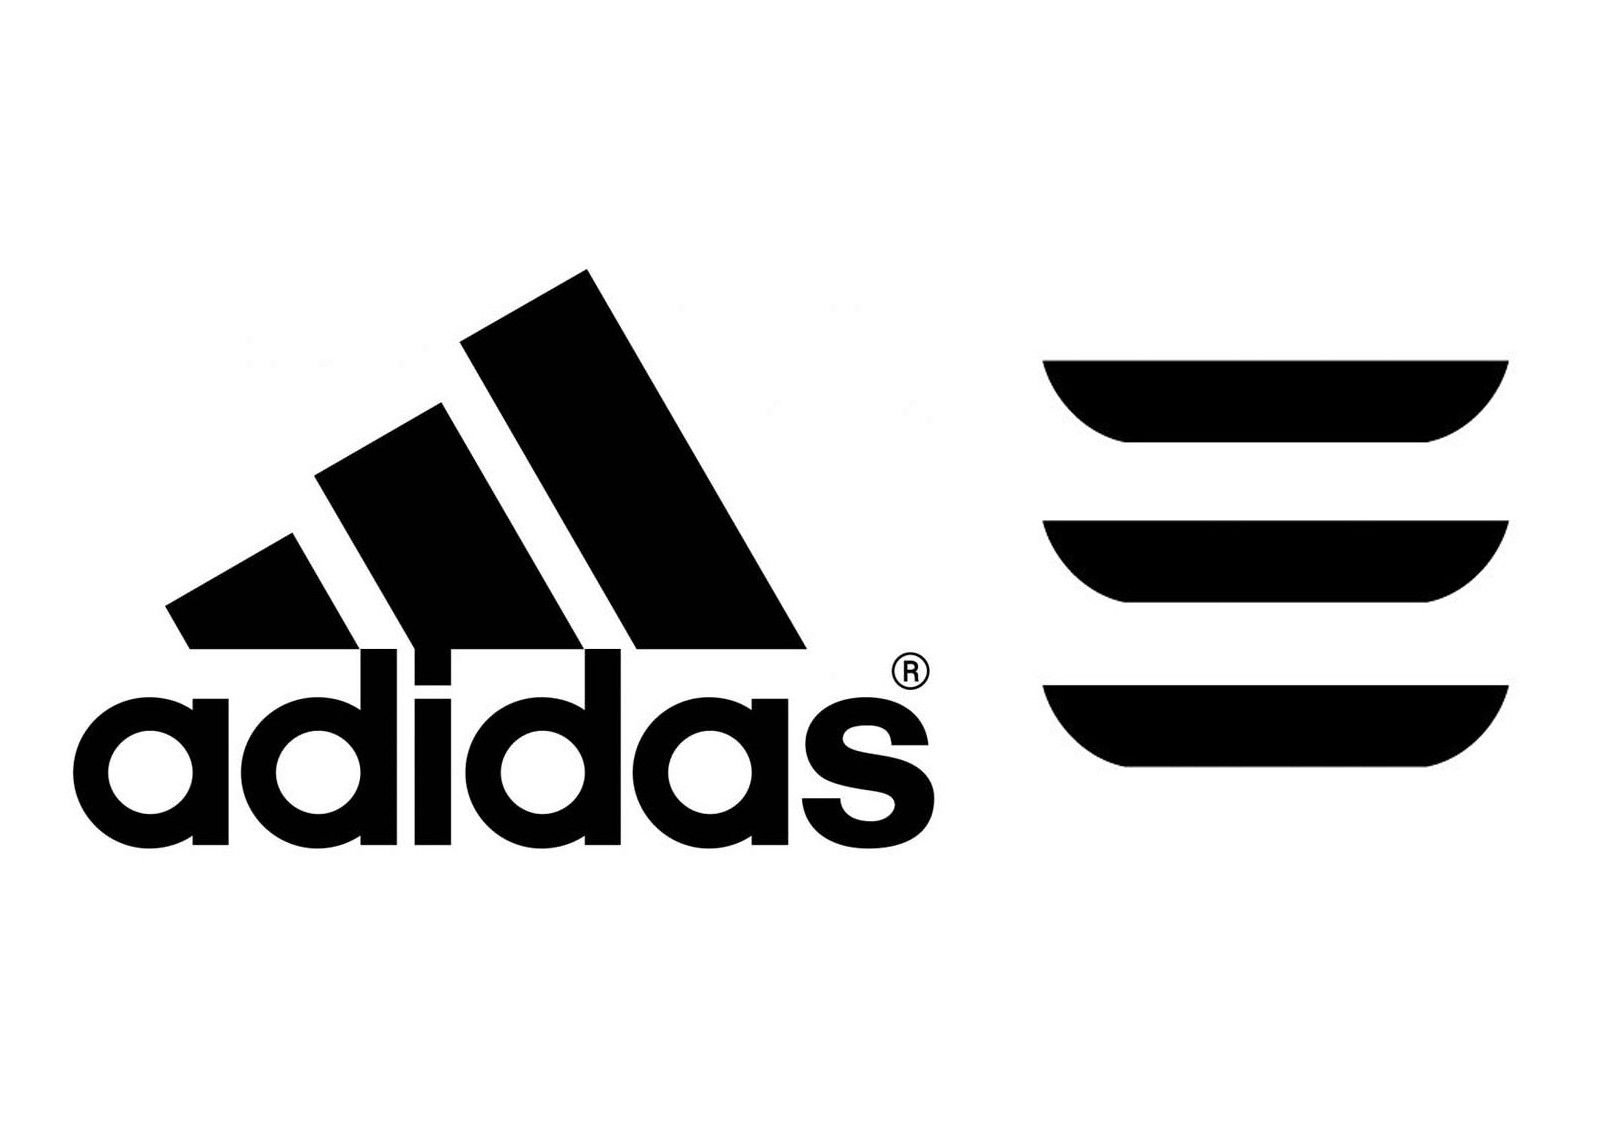 Версии адидас. Adidas logo 2021. Adidas 2002 Neo logo 3 полоски. Adidas logo vector. Адидас перфоманс лого.